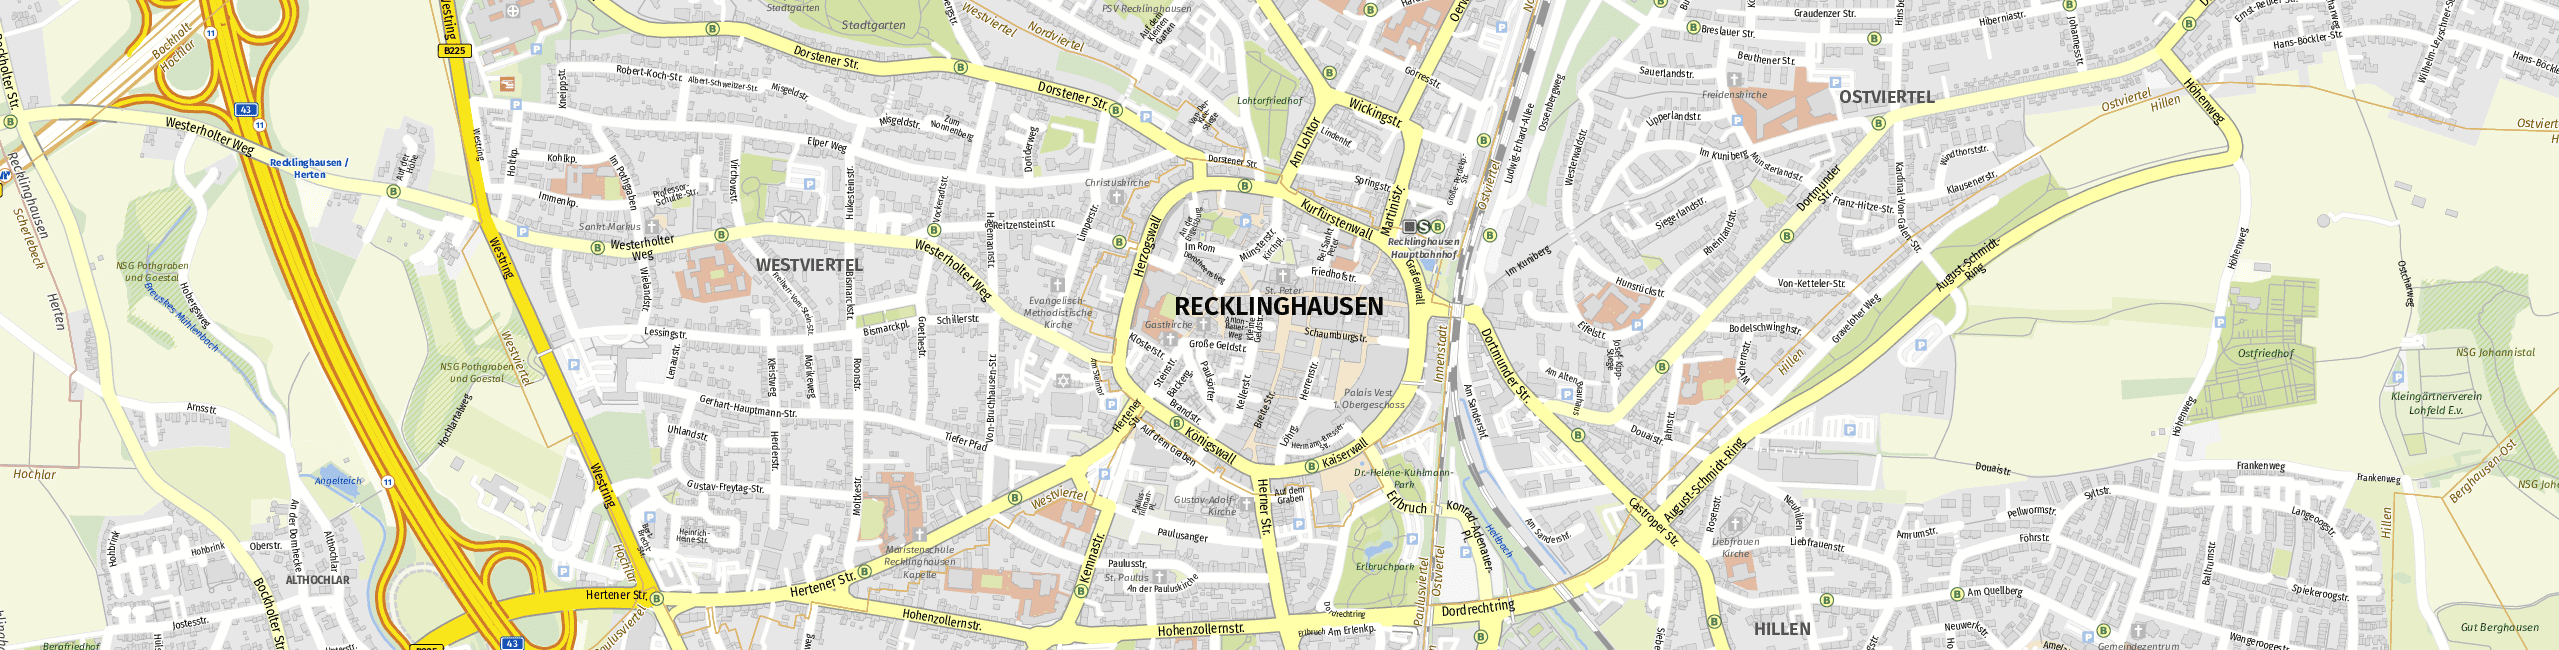 Stadtplan Recklinghausen zum Downloaden.